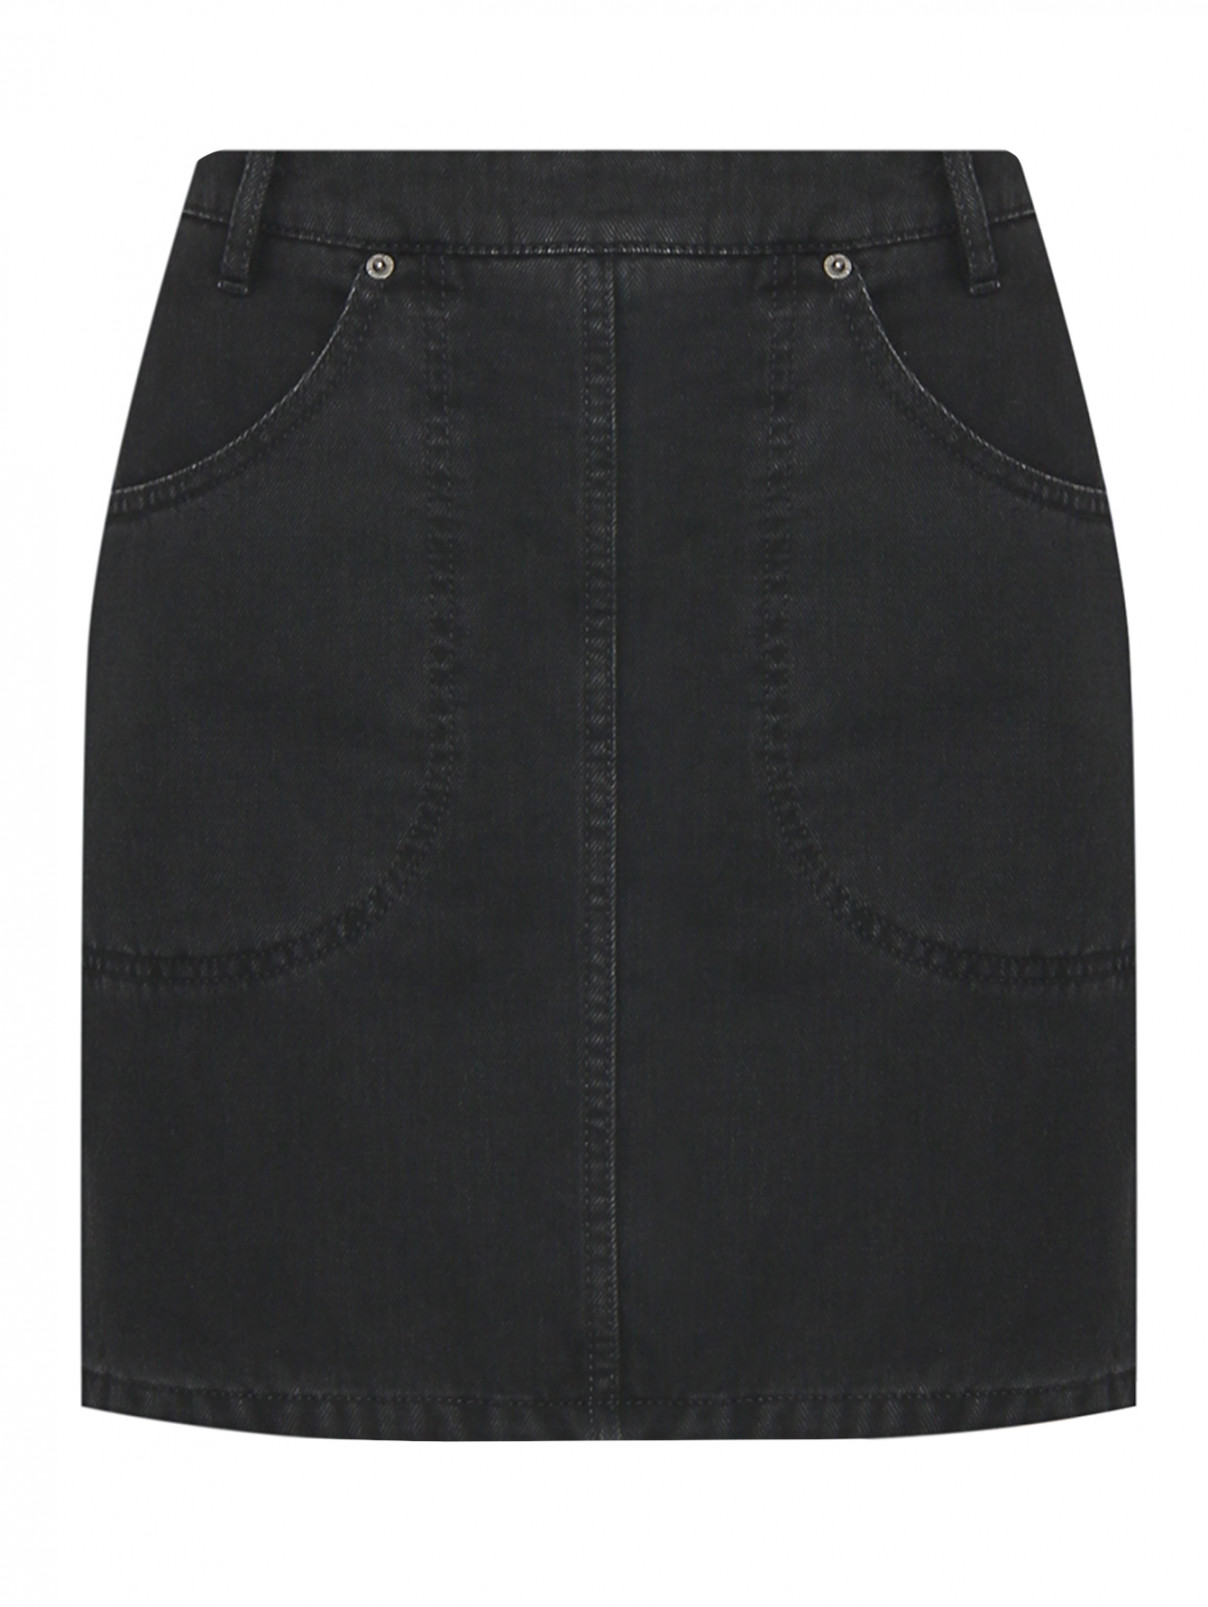 Джинсовая юбка-мини с карманами Kenzo  –  Общий вид  – Цвет:  Черный